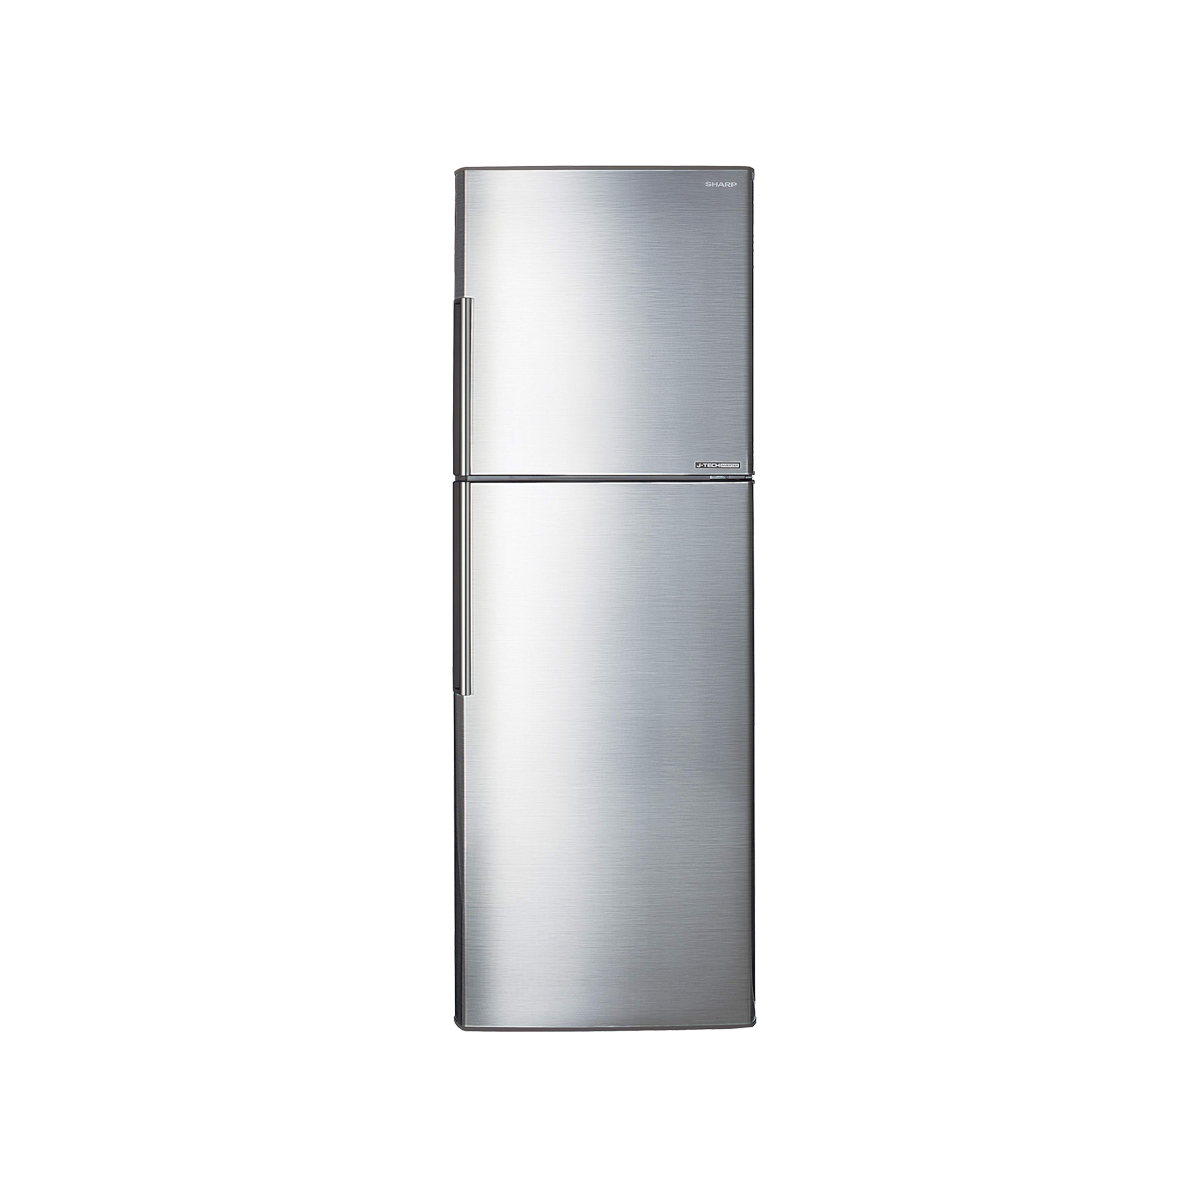 Sharp Refrigerator 309L J-Tech Inverter